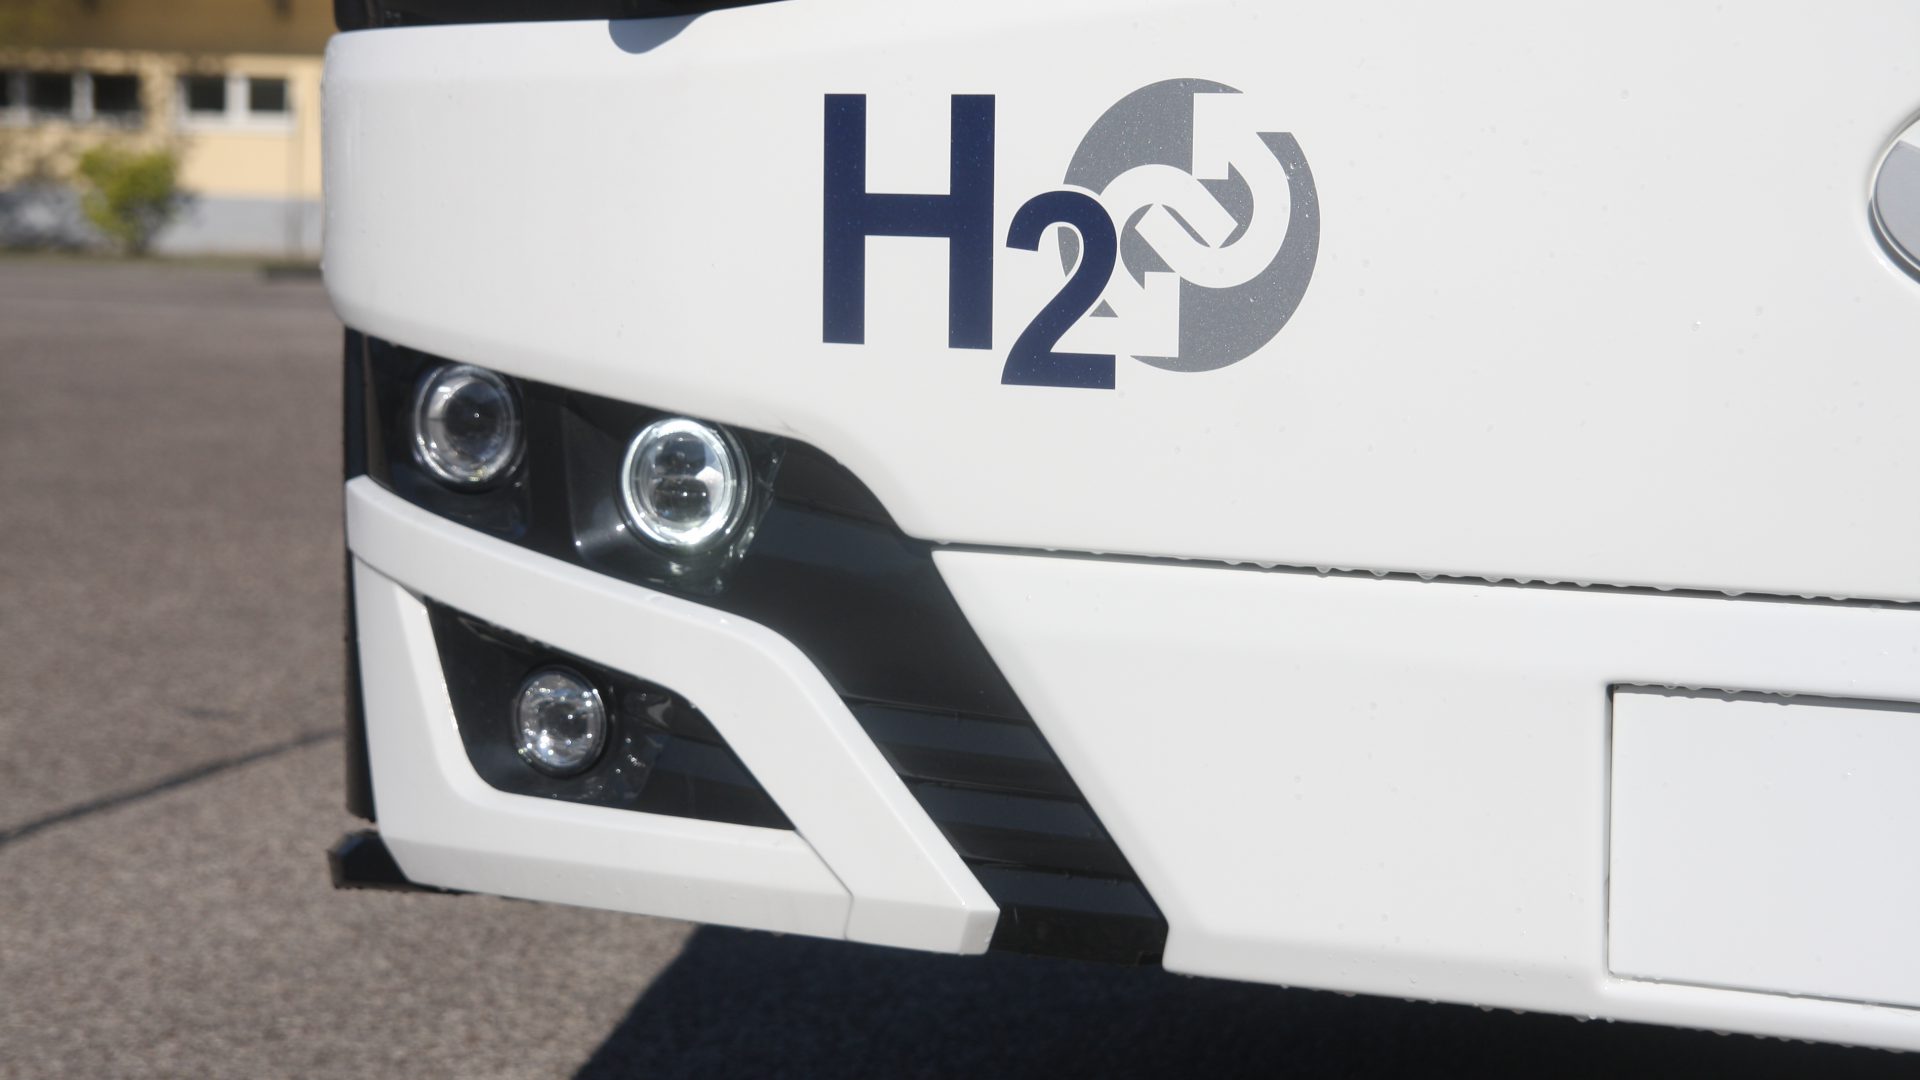 sasa bolzano hydrogen bus